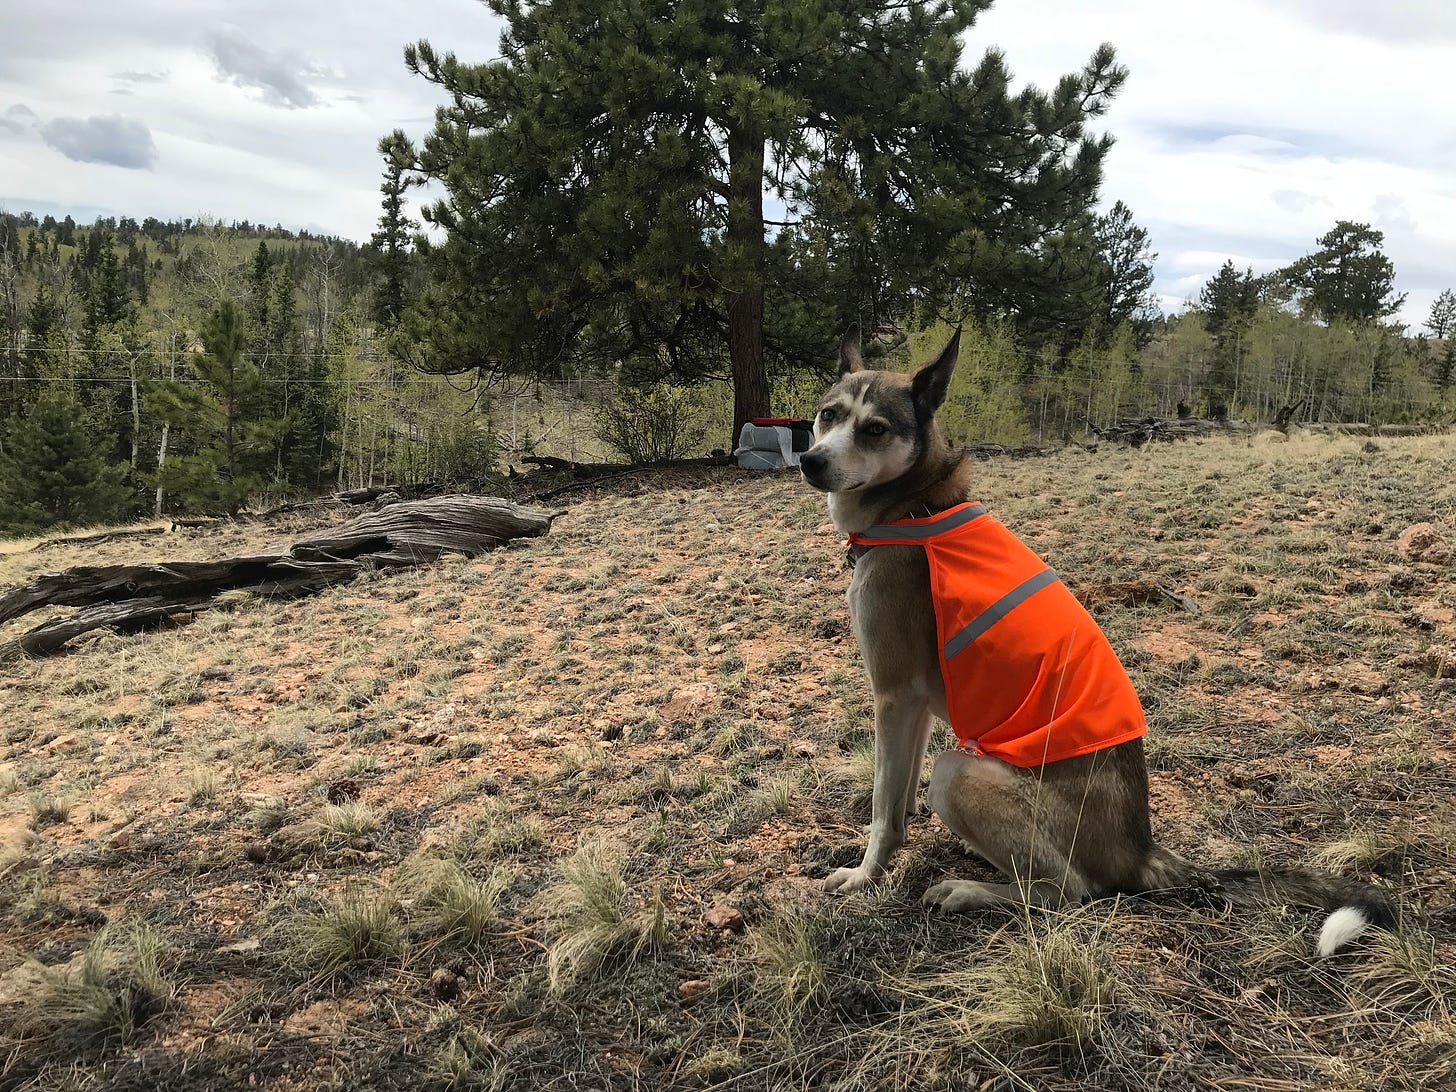 our dog Dakota and her orange vest